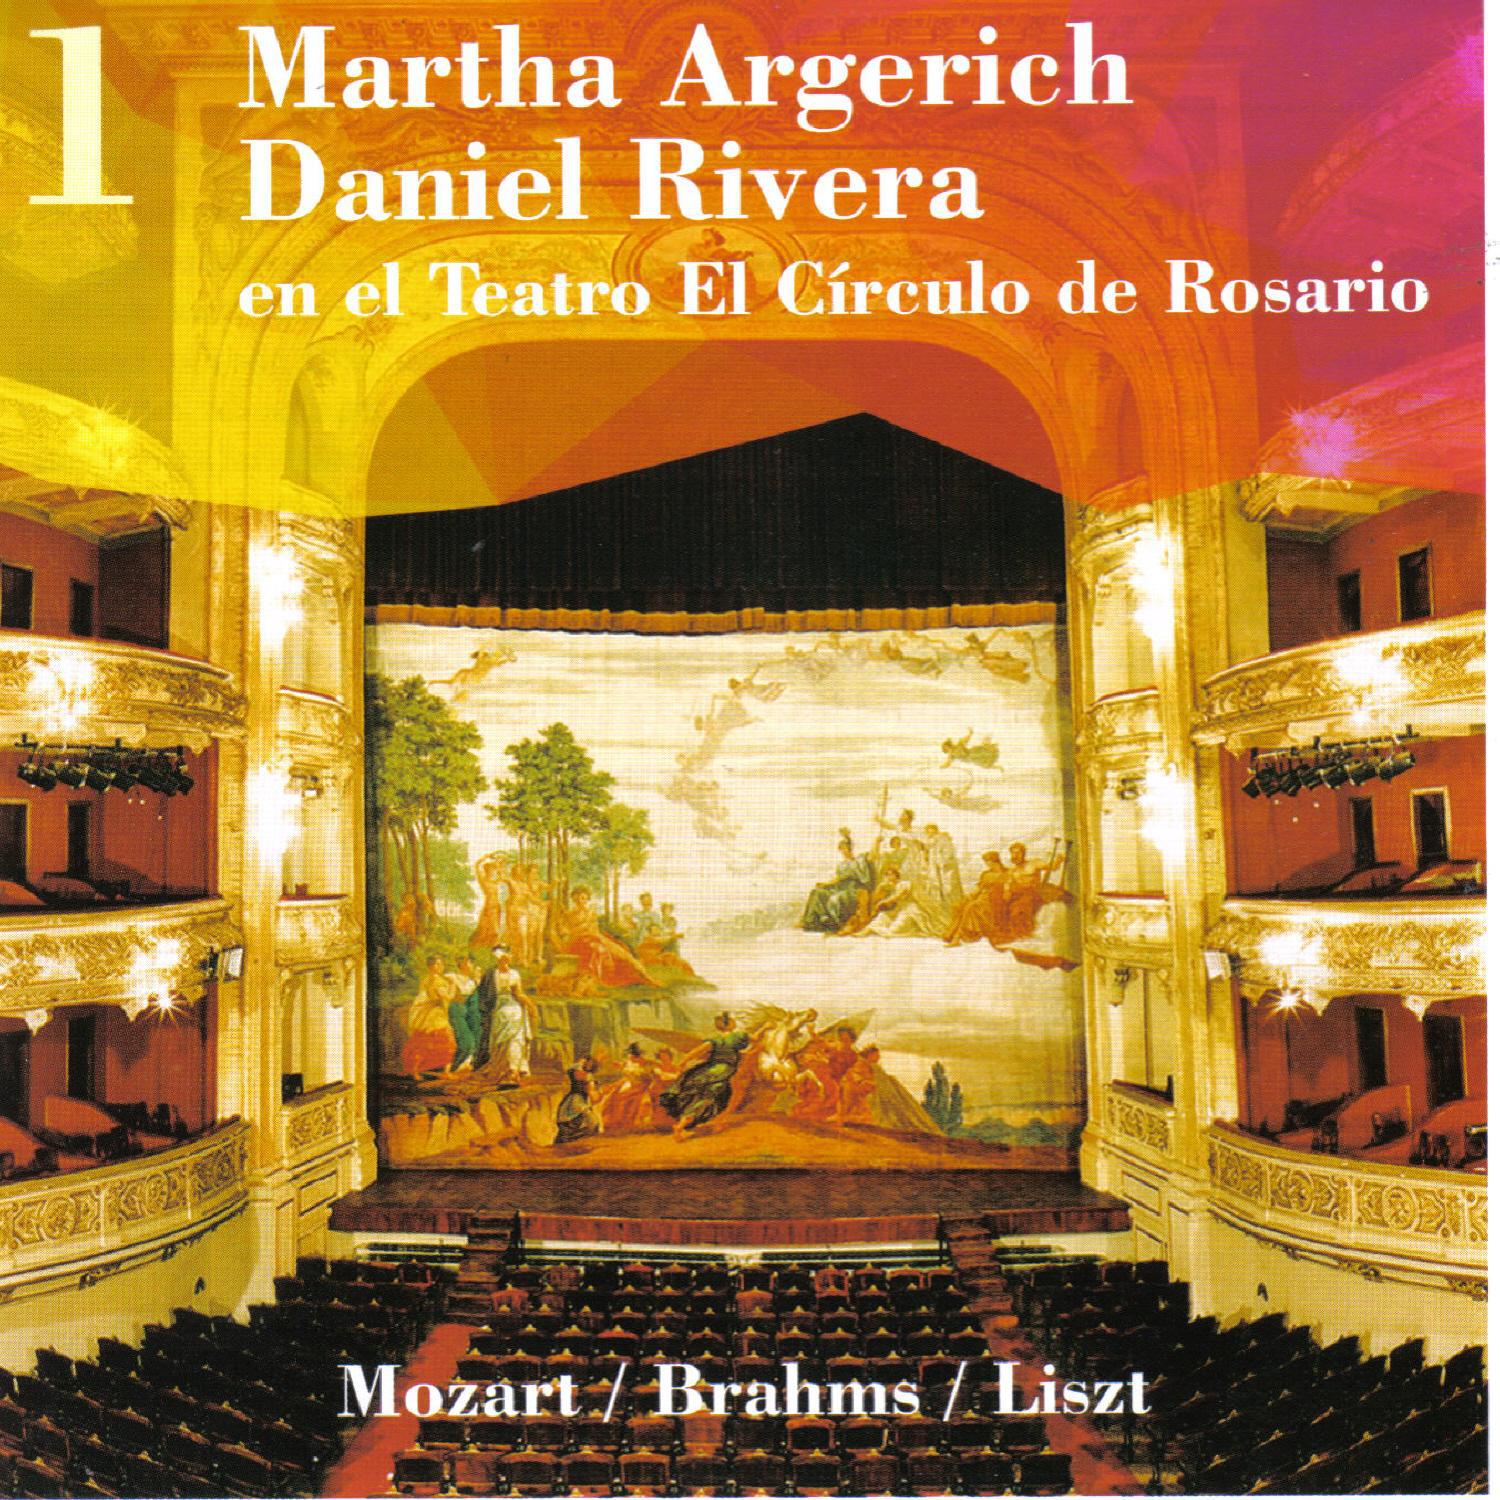 Martha Argerich  Daniel Rivera, en el Teatro El Ci rculo de Rosario, Vol. 1